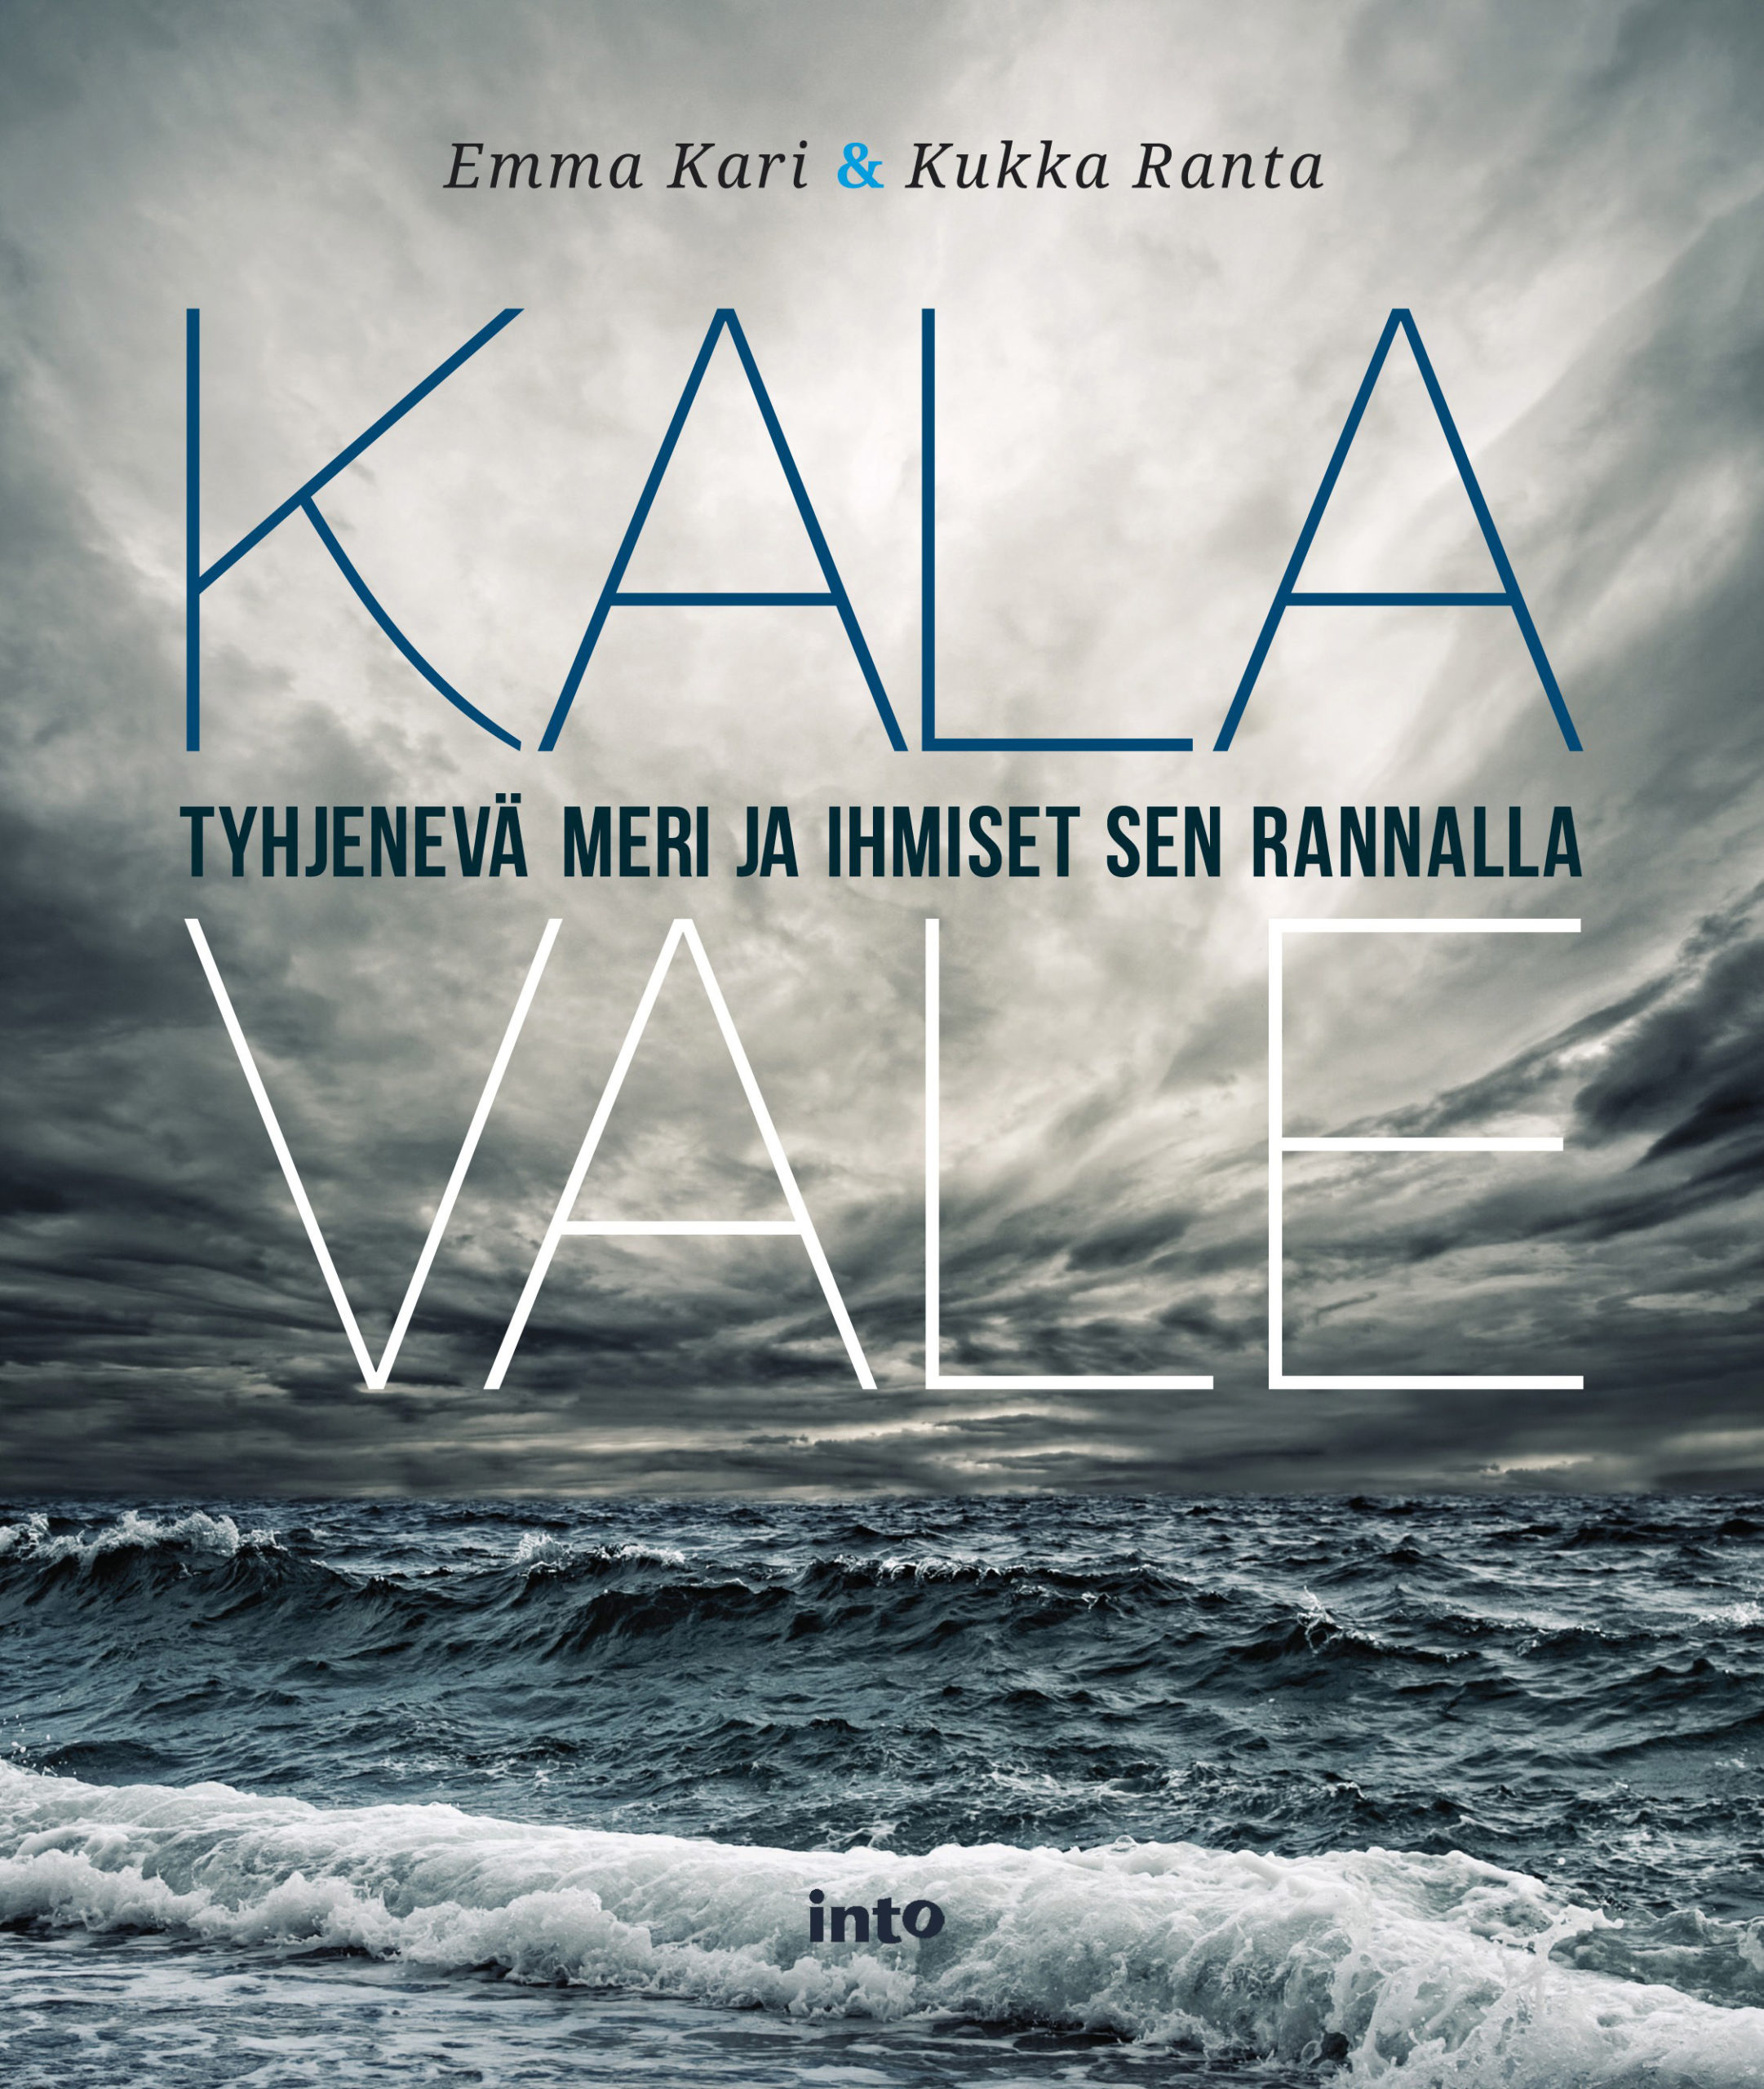 Emma Kari & Kukka Ranta: Kalavale. Into Kustannus 2012, 112 s.